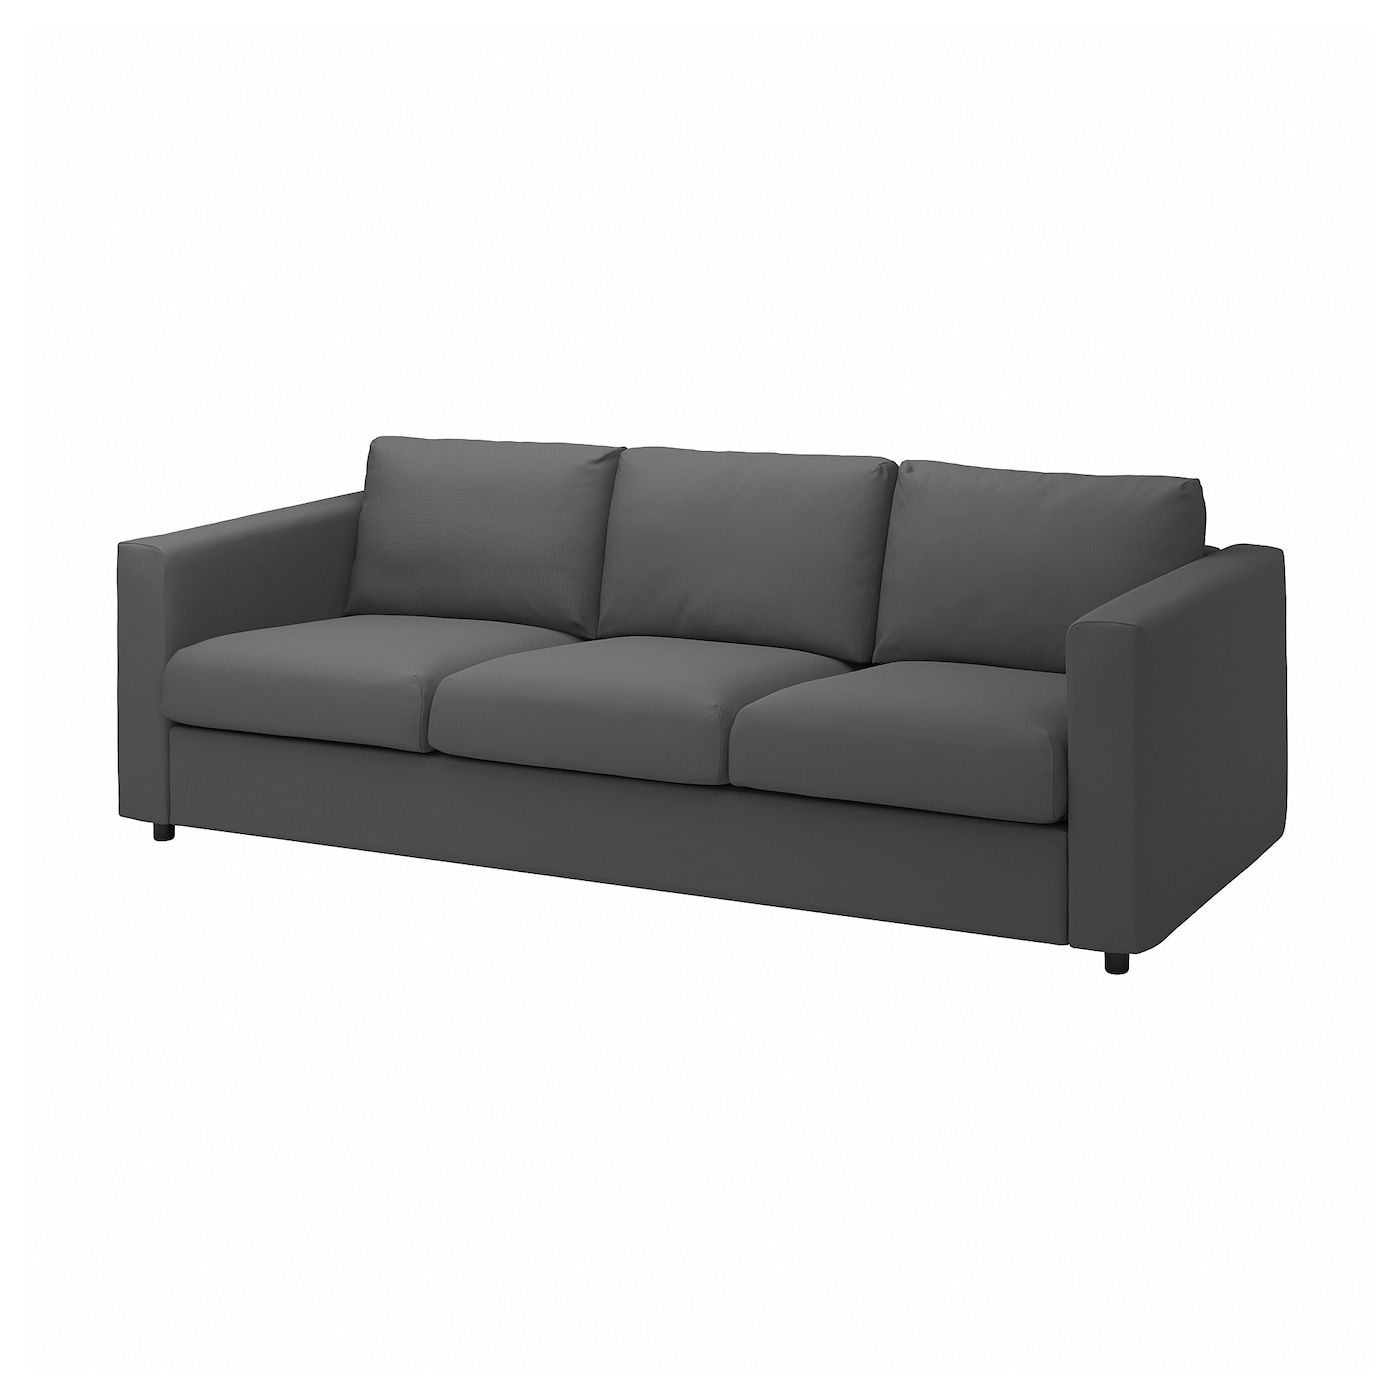 ВИМЛЕ 3-местный диван, Халларп серый VIMLE IKEA диван диван ру бонс т happy deep ocean